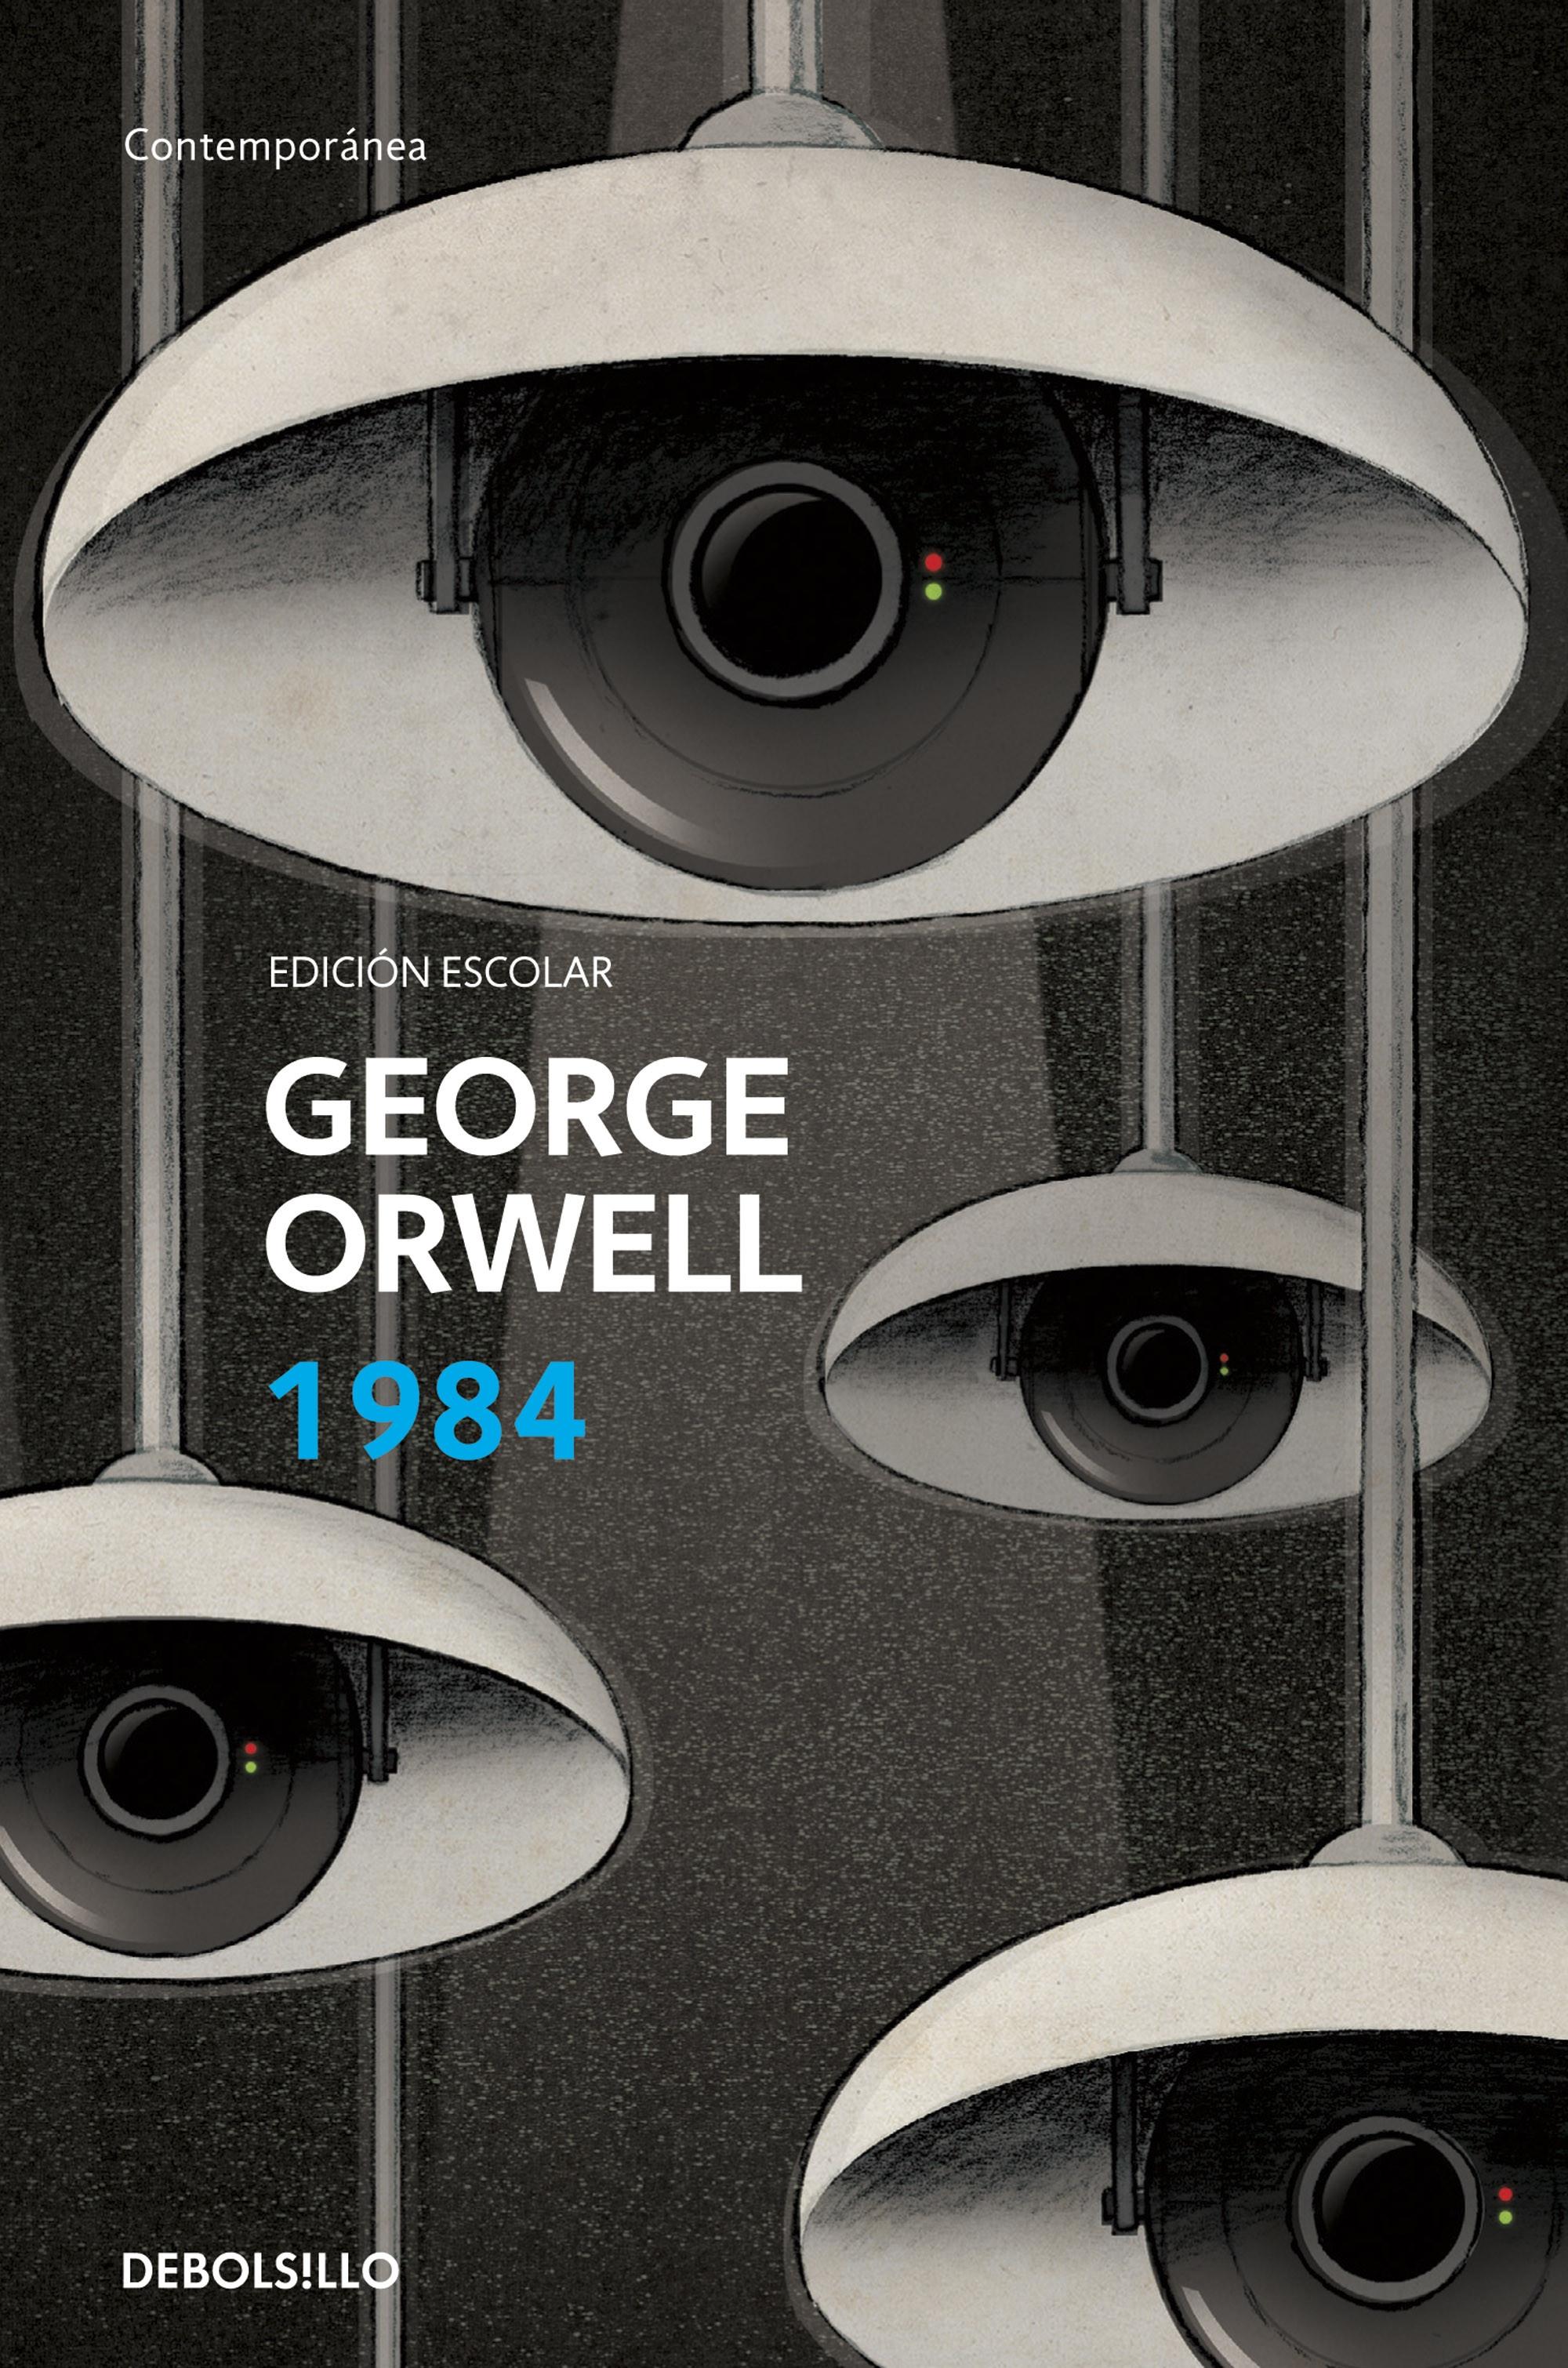 1984 "(Edición escolar definitiva avalada por The Orwell Estate)"